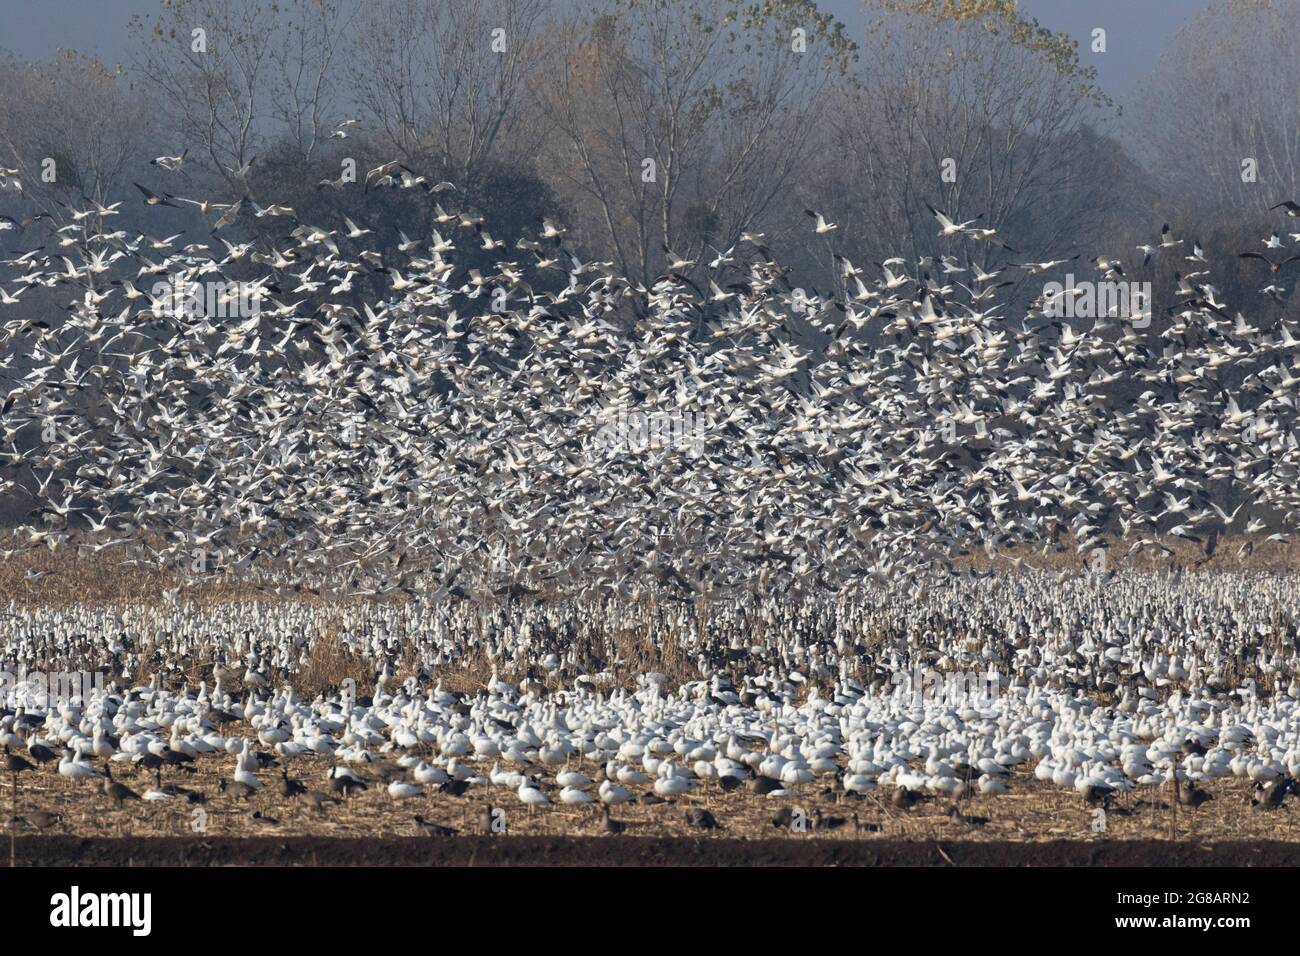 Un énorme troupeau d'Oies de Ross, Chen rossii, enferme un champ de maïs rempli d'oies dans la réserve naturelle nationale de San Joaquin River, en Californie. Banque D'Images